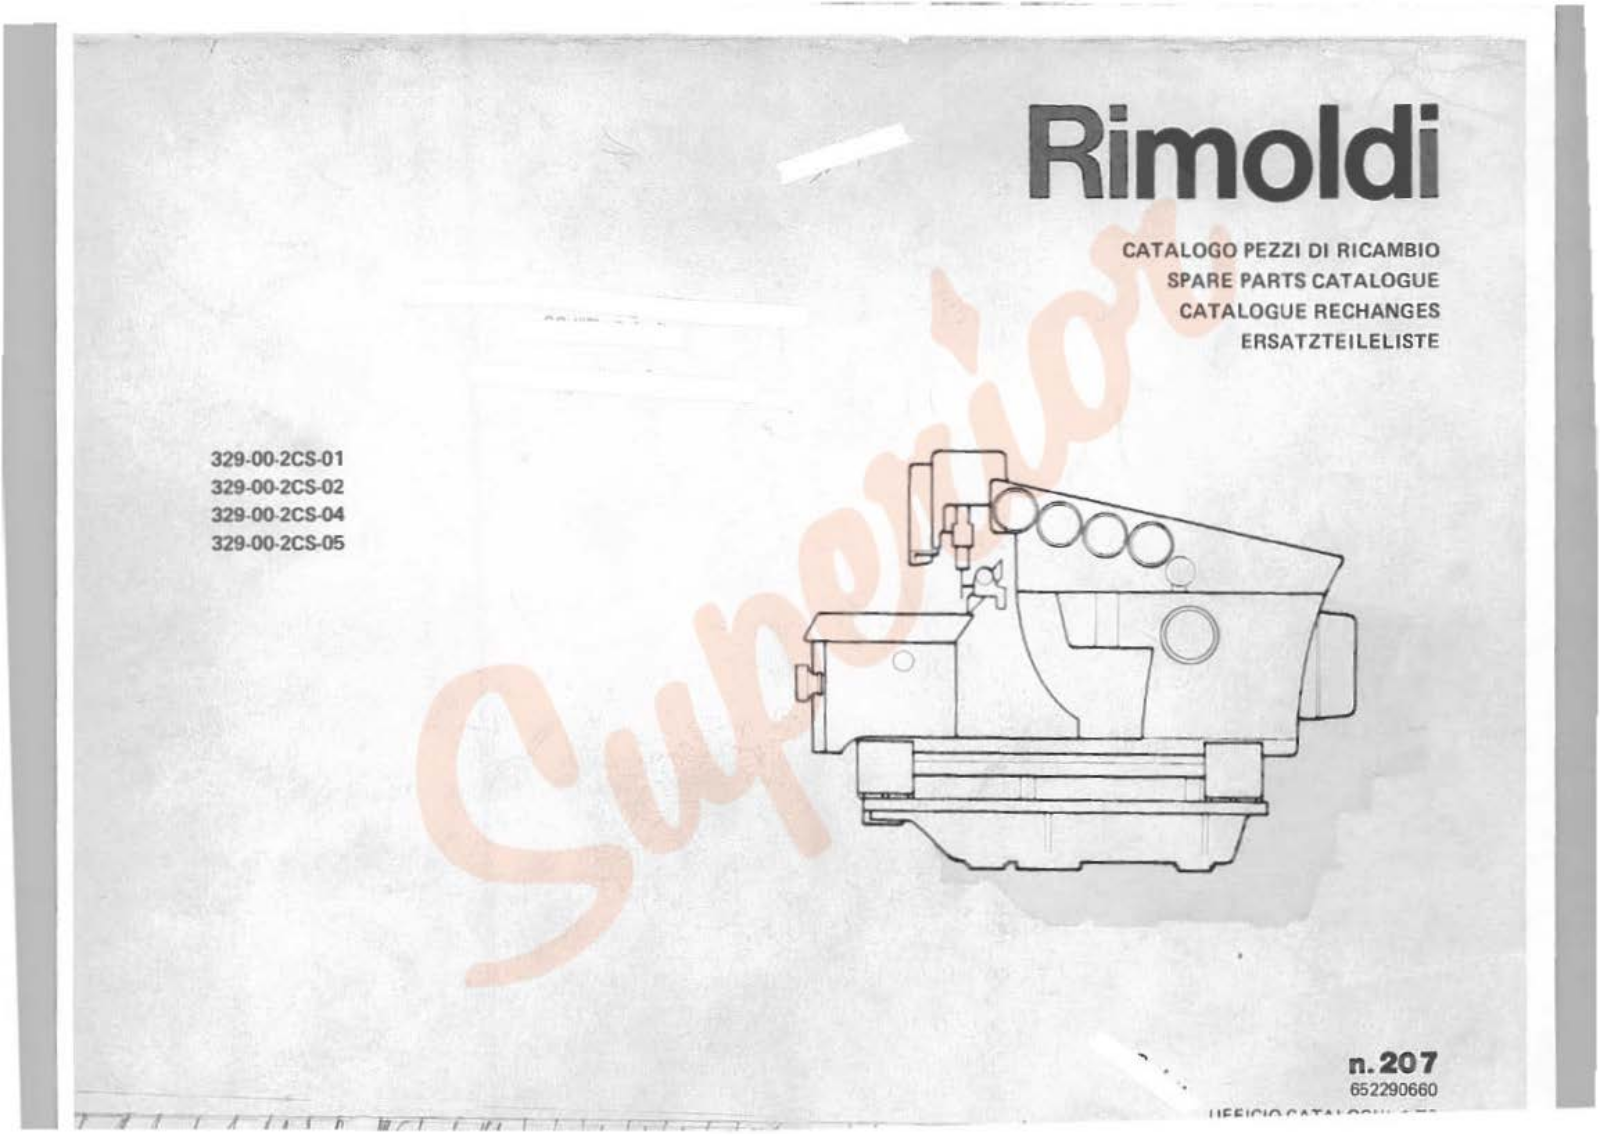 Rimoldi 329-00-2CS-01, 329-00-2CS-02, 329-00-2CS-04, 329-00-2CS-05 User Manual